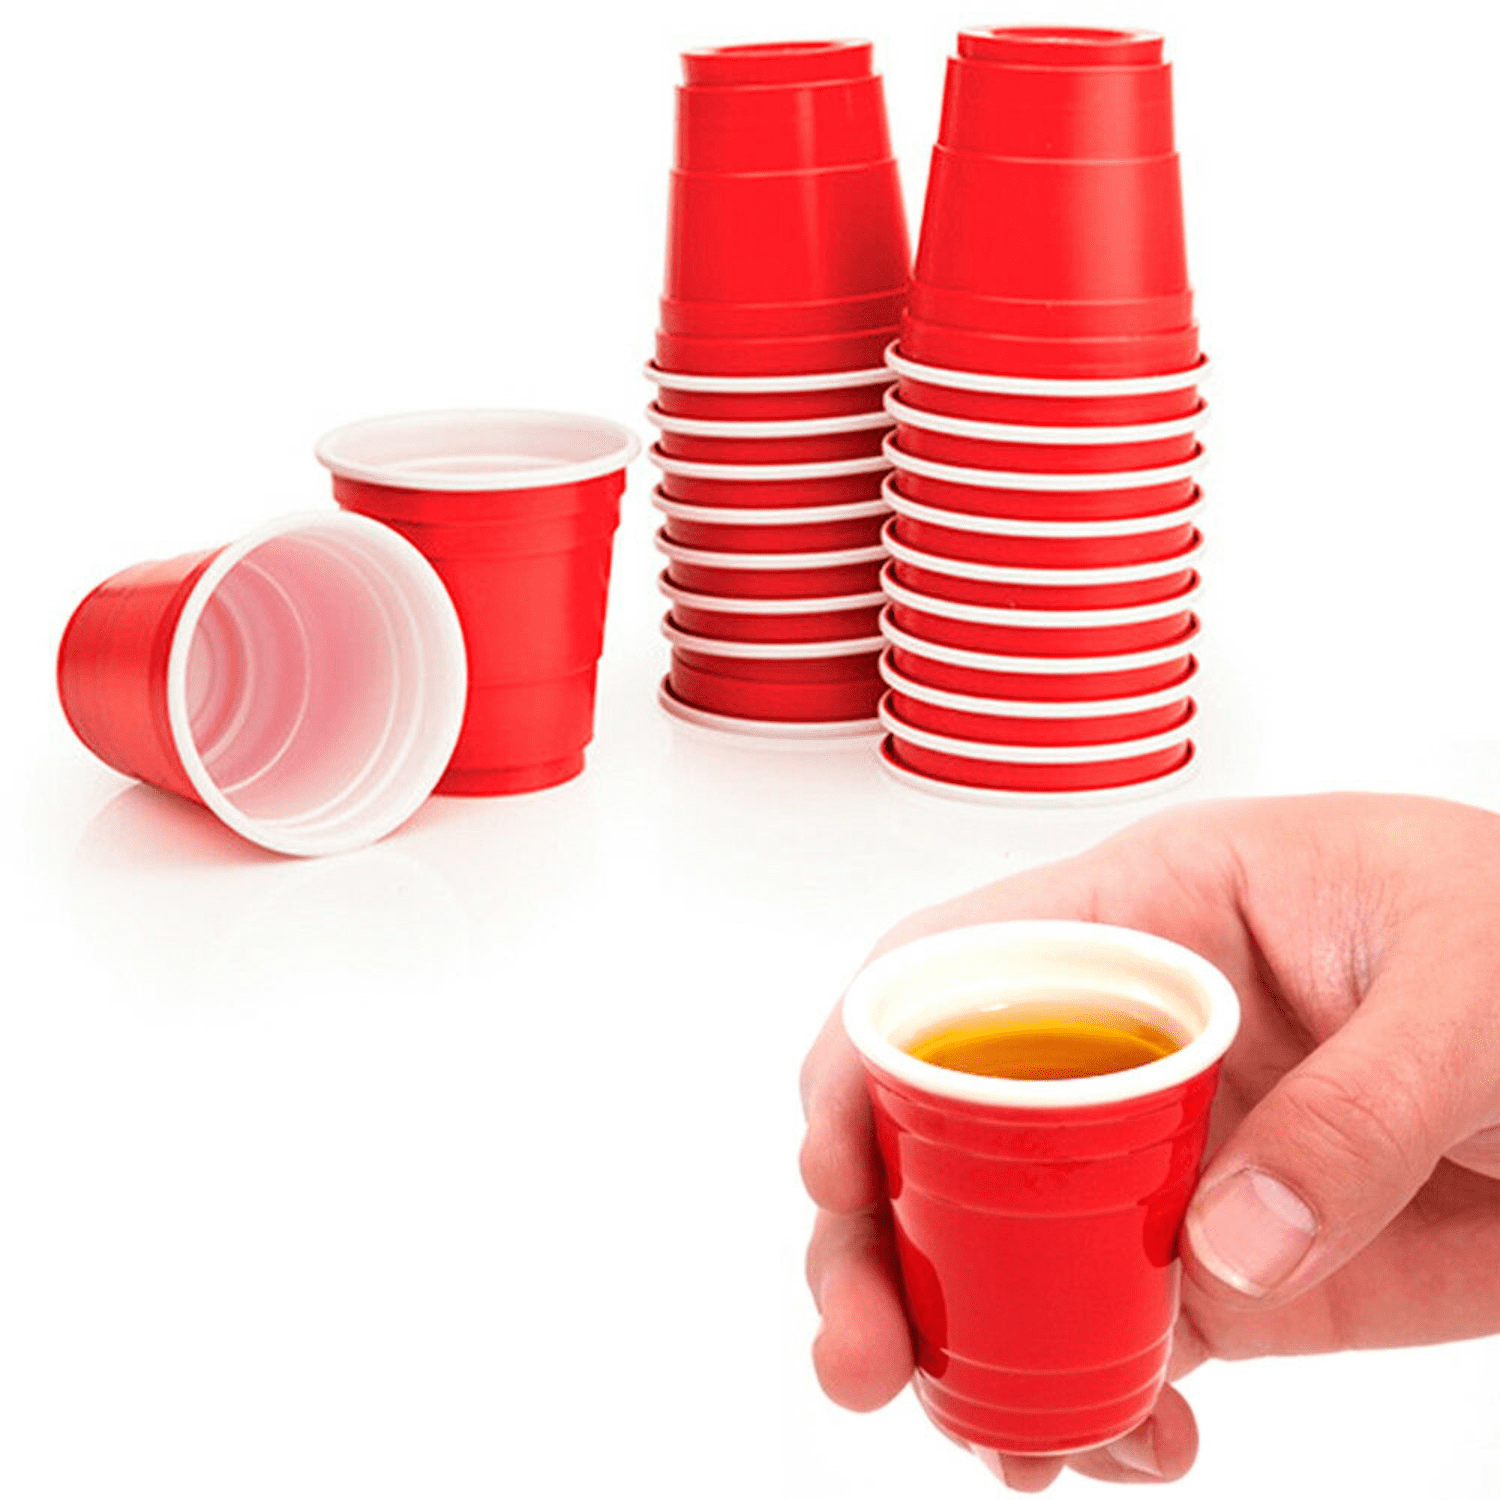 RAIBEATTY Disposable Shot Glasses,100 Count Mini Solo Cups,2oz Plastic Shot  Cups,Bright Pink Mini Sh…See more RAIBEATTY Disposable Shot Glasses,100